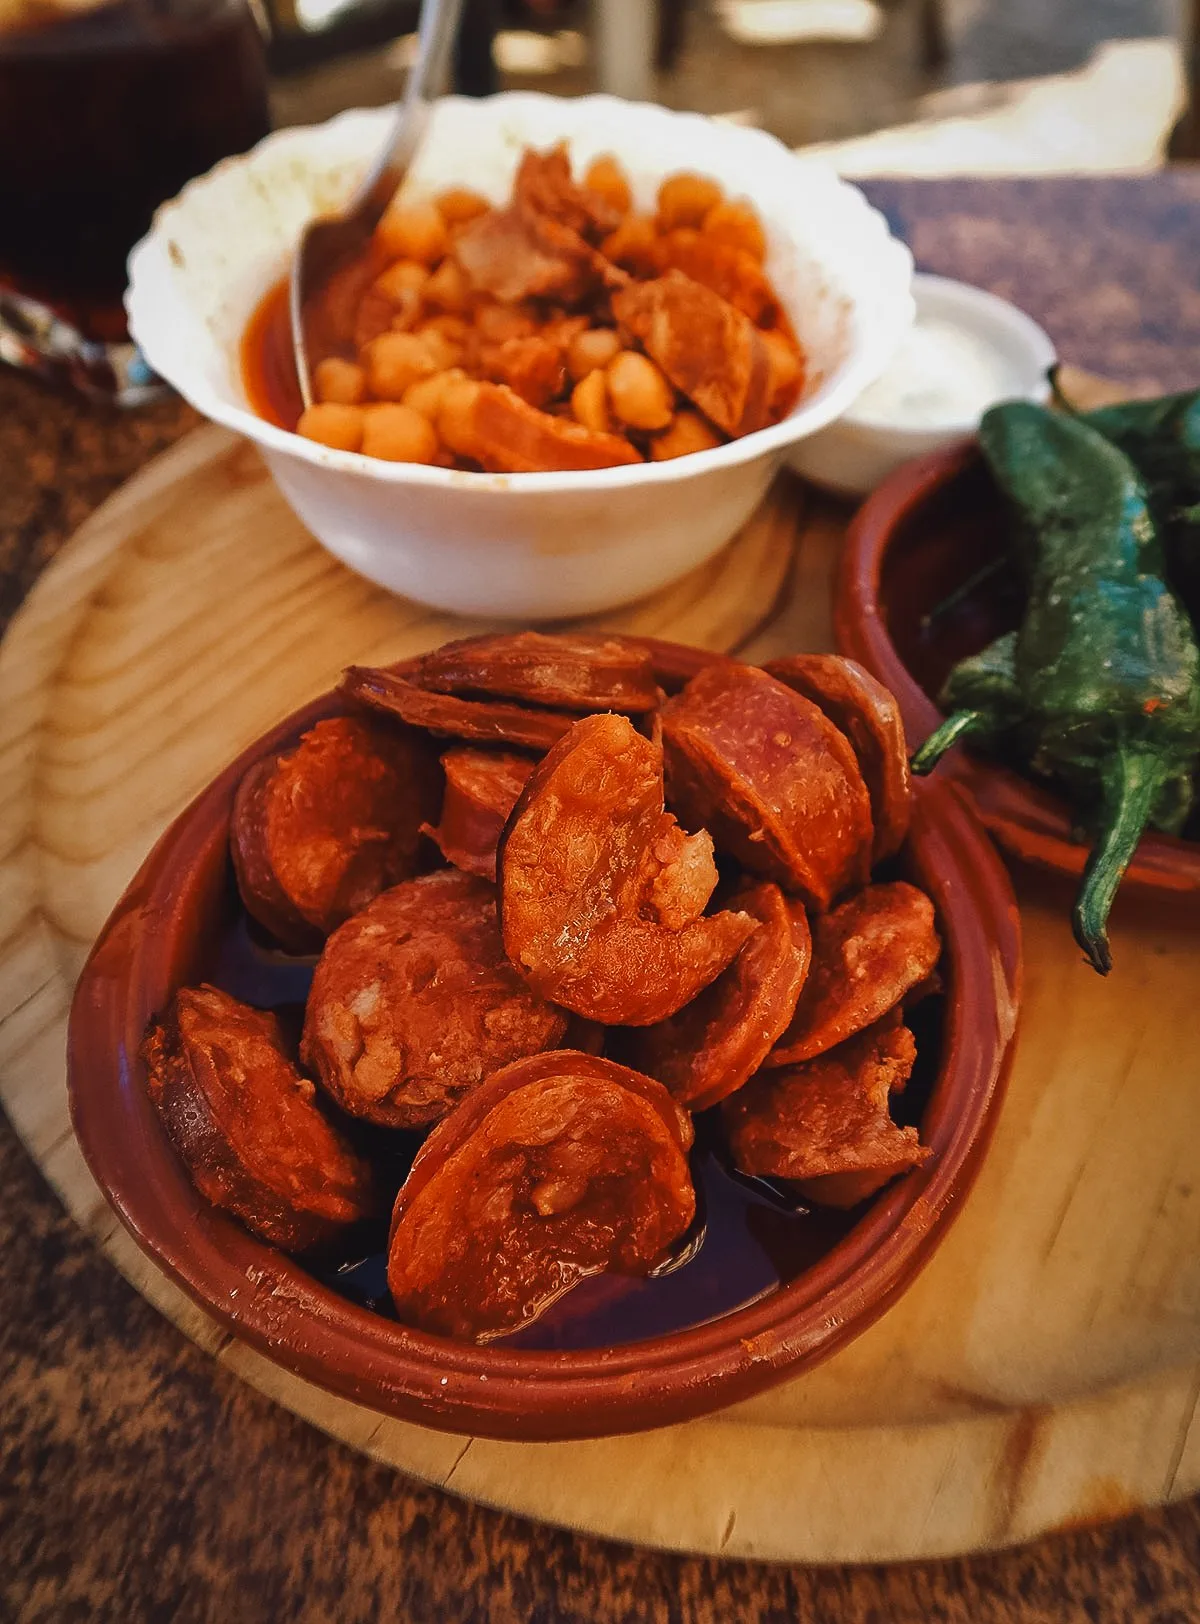 Chorizo at a restaurant in Malaga